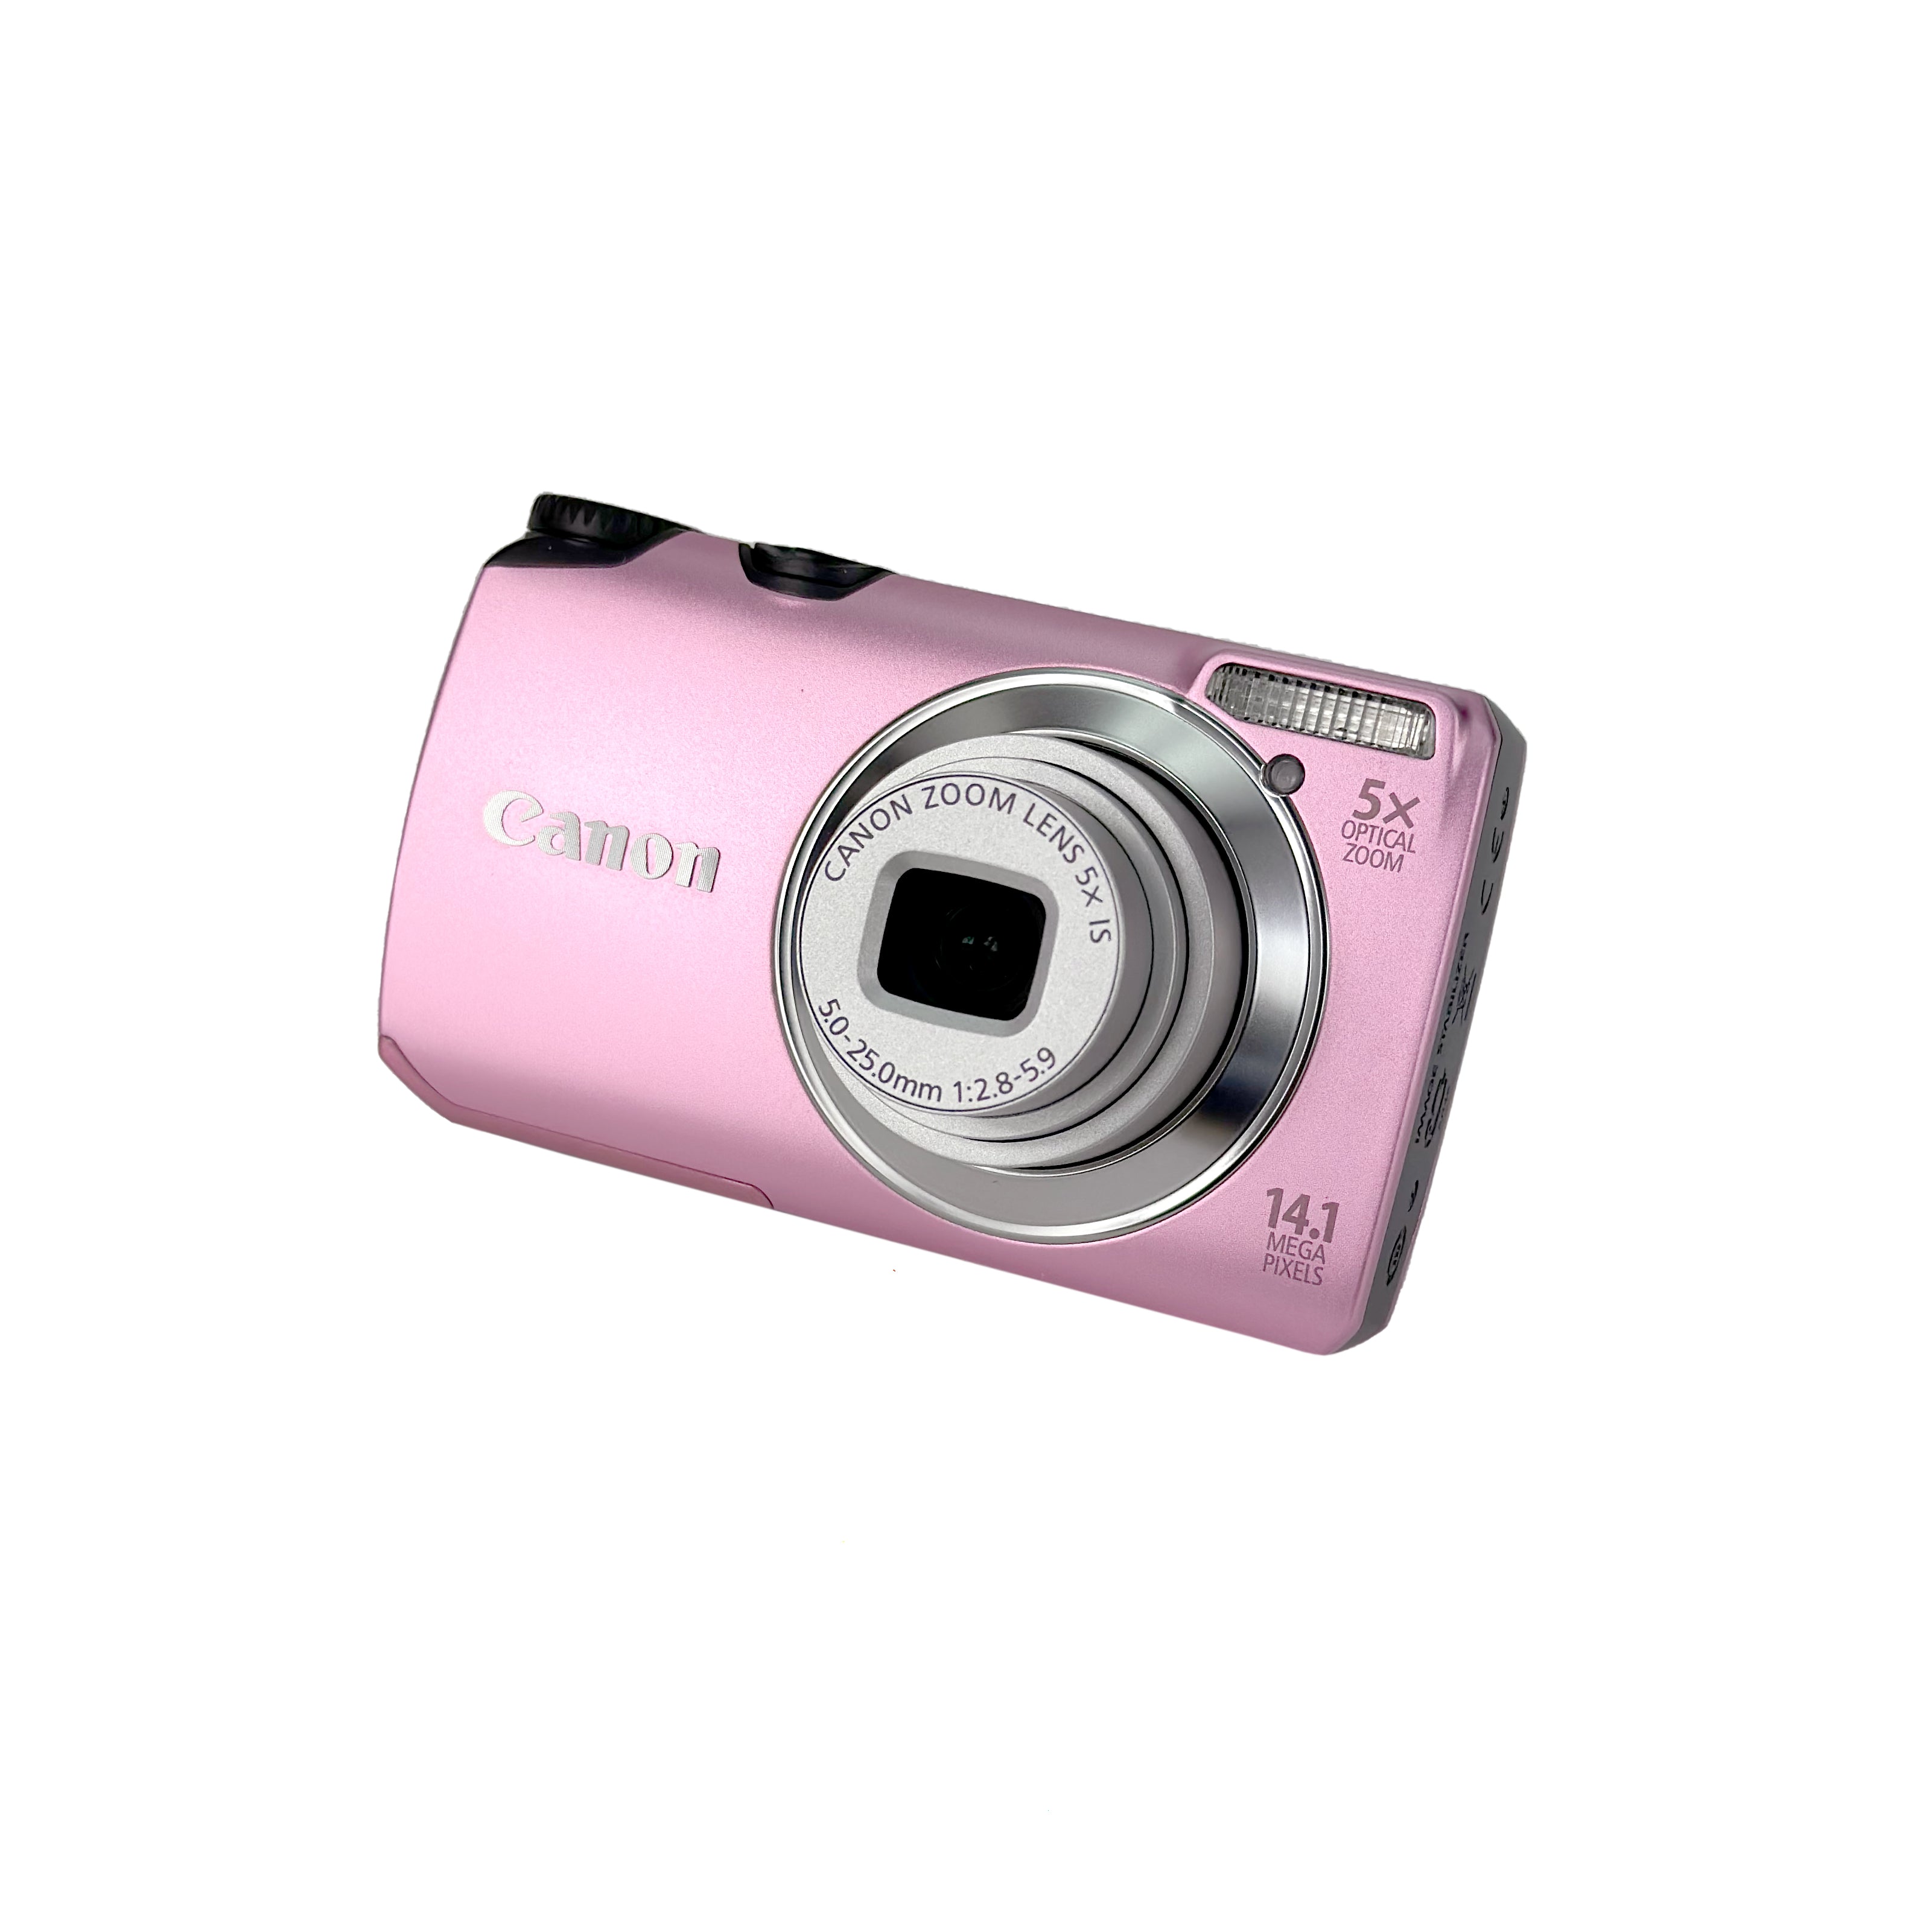 Canon デジタルカメラ PowerShot A3200 IS ピンク PSA3200IS(PK) wgteh8f-